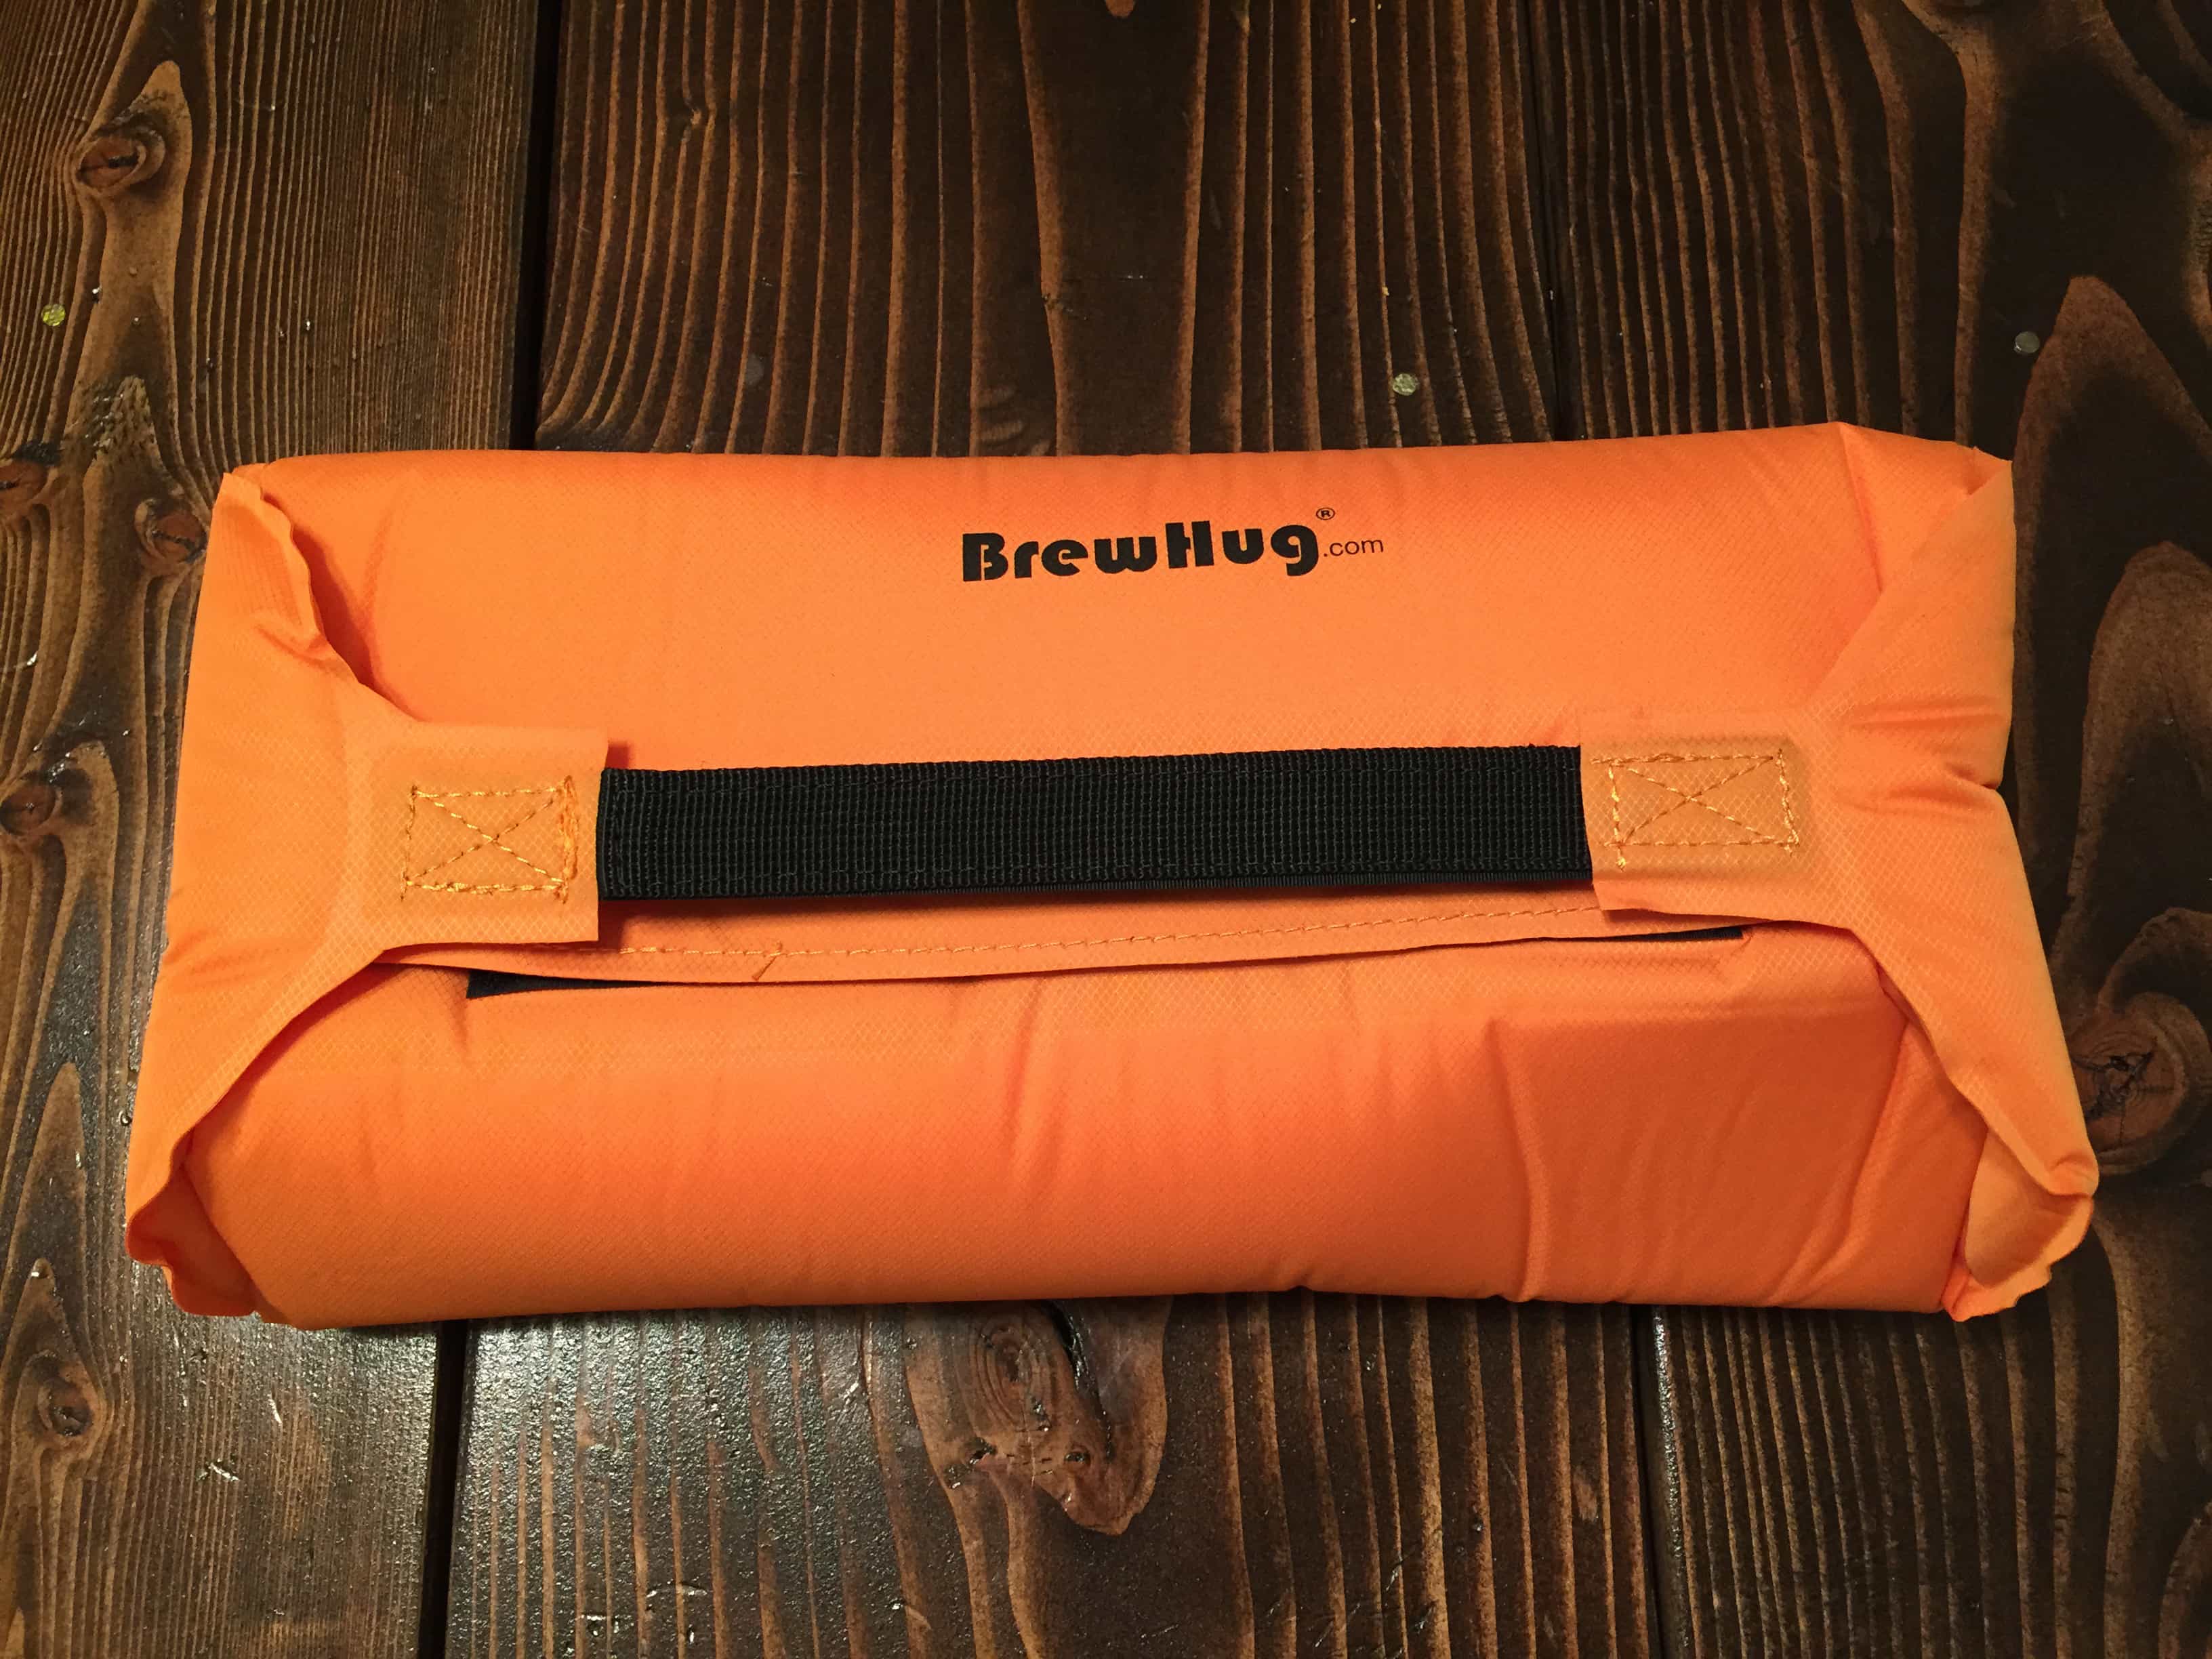 BrewHug Self-Inflating Beer Bottle Protector